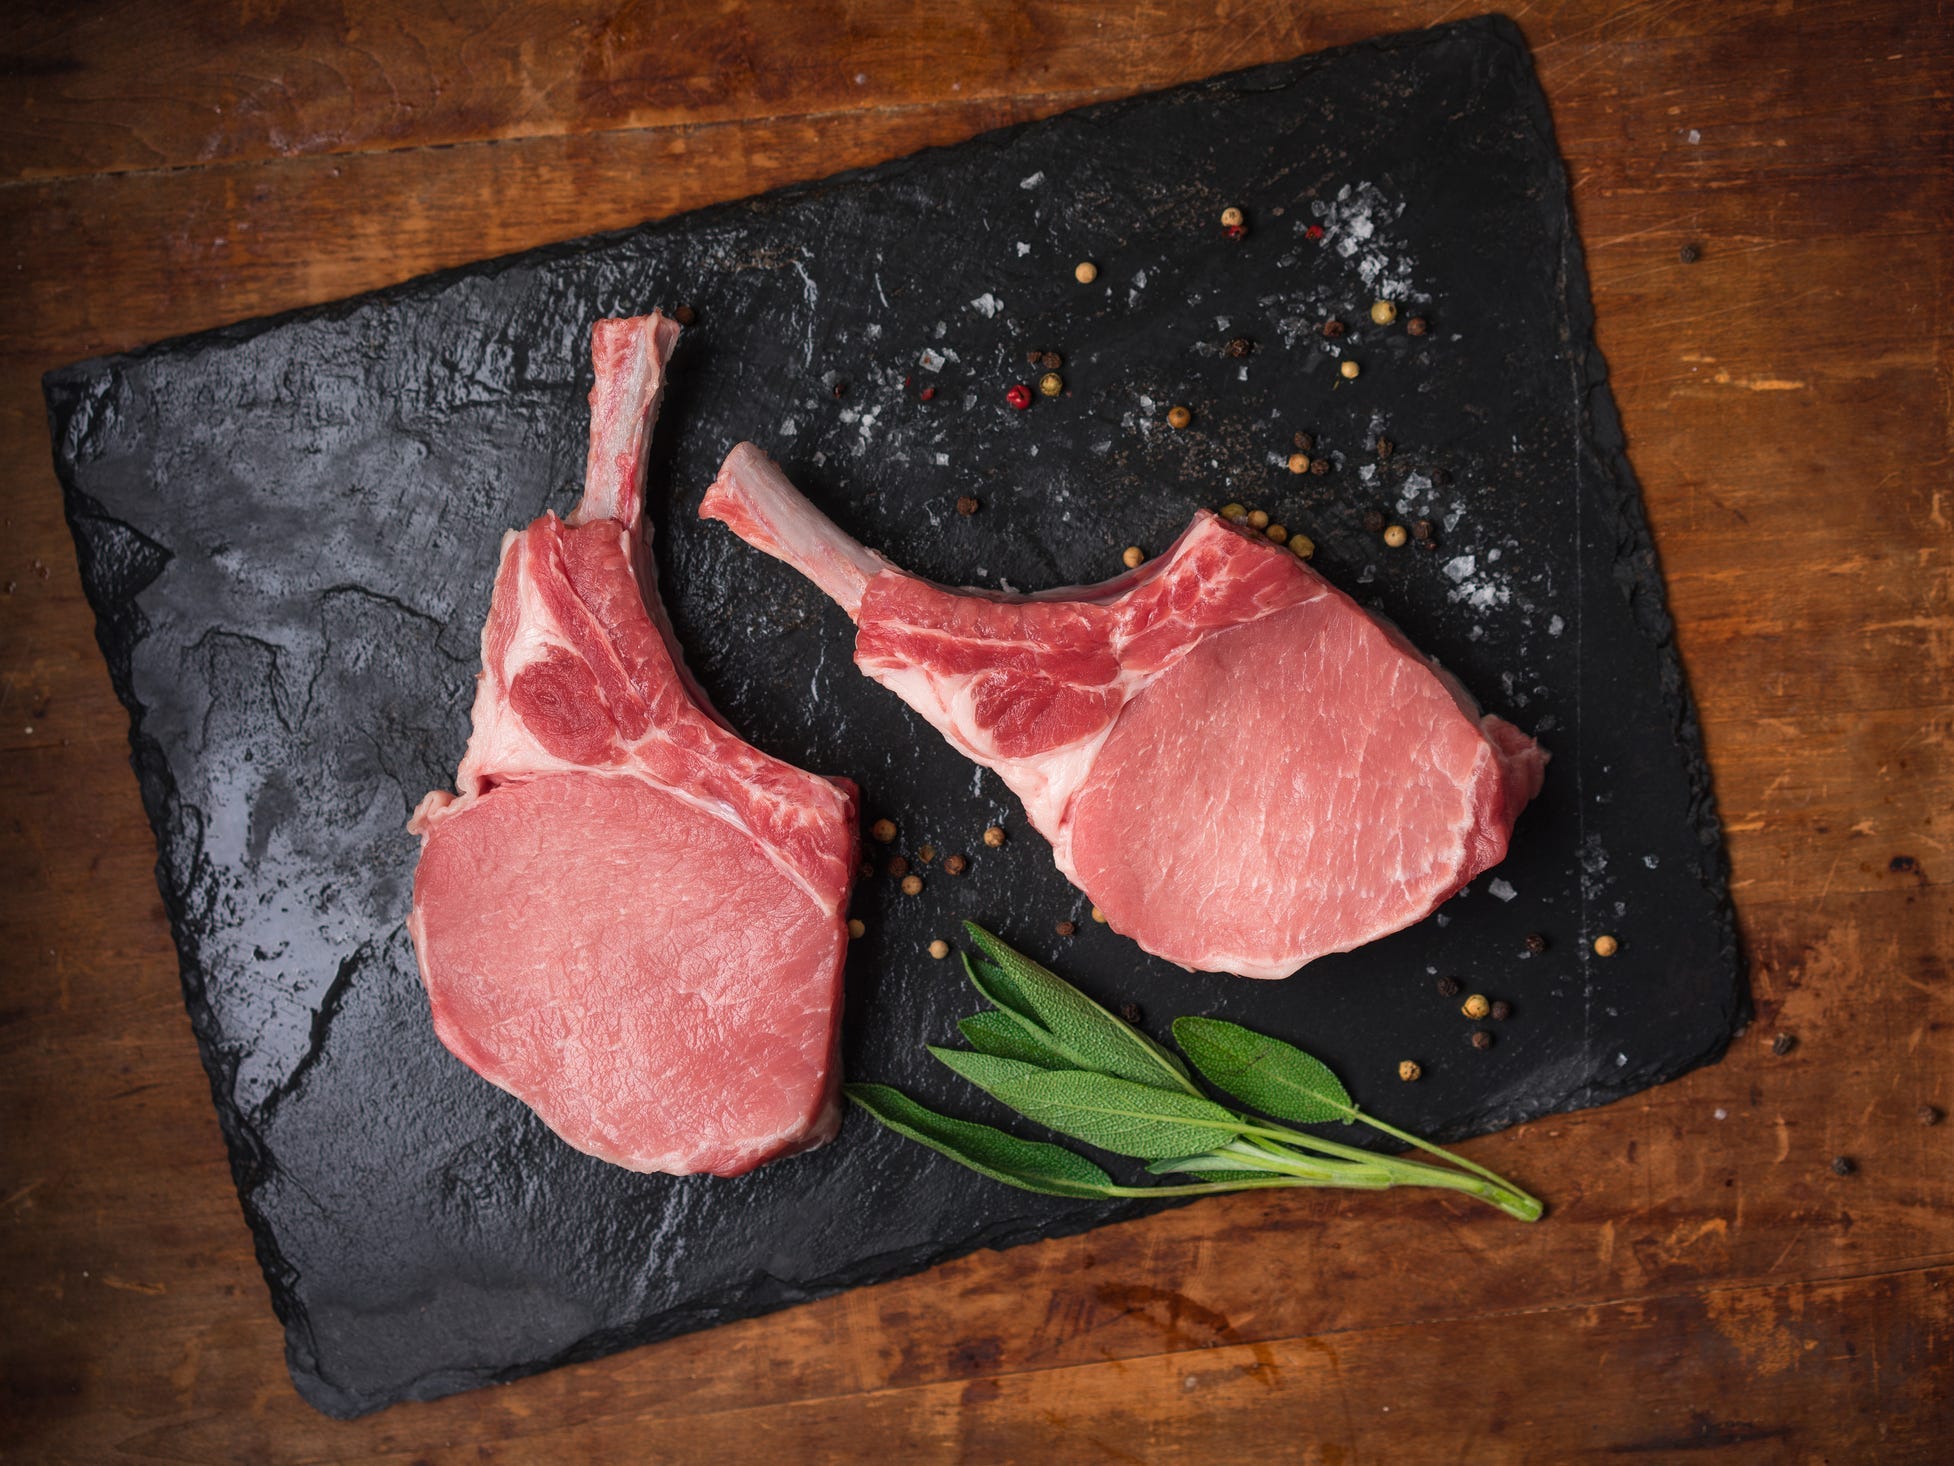 Two raw bone-in pork chops on a slate board